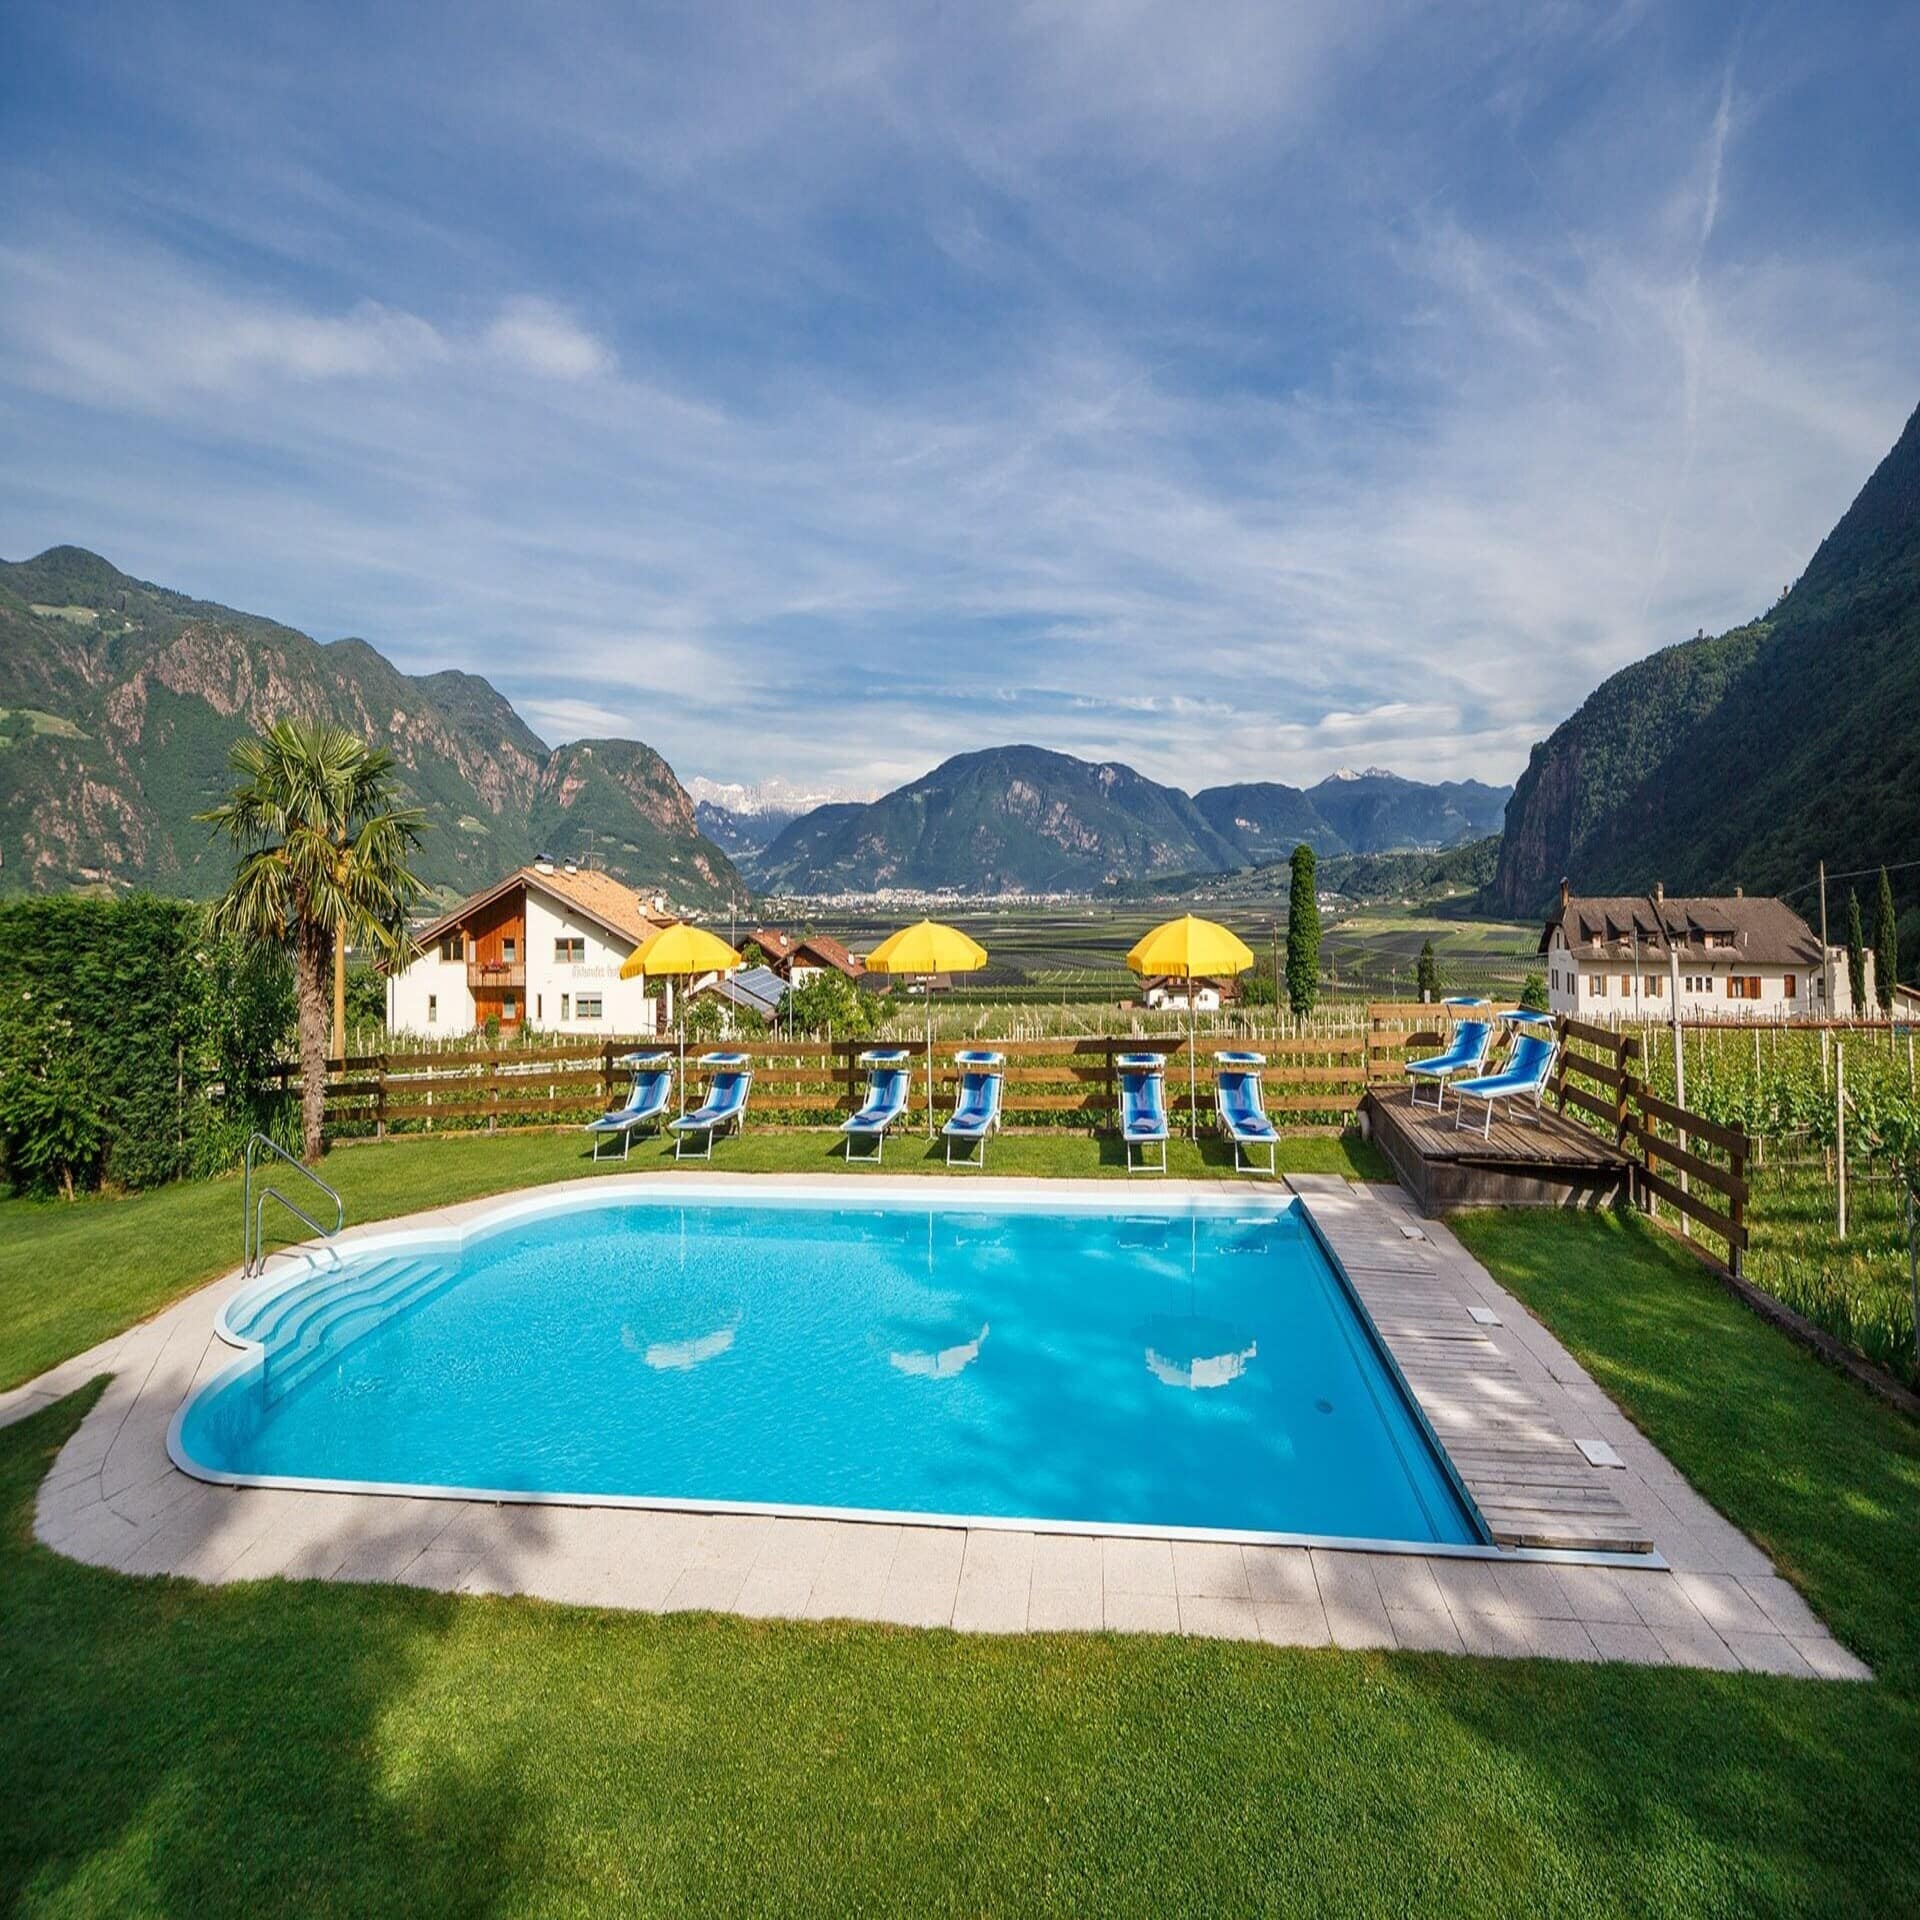 Garten mit Pool, Liegestühlen und Sonnenschirmen und Blick auf Weinberge und Berge. 